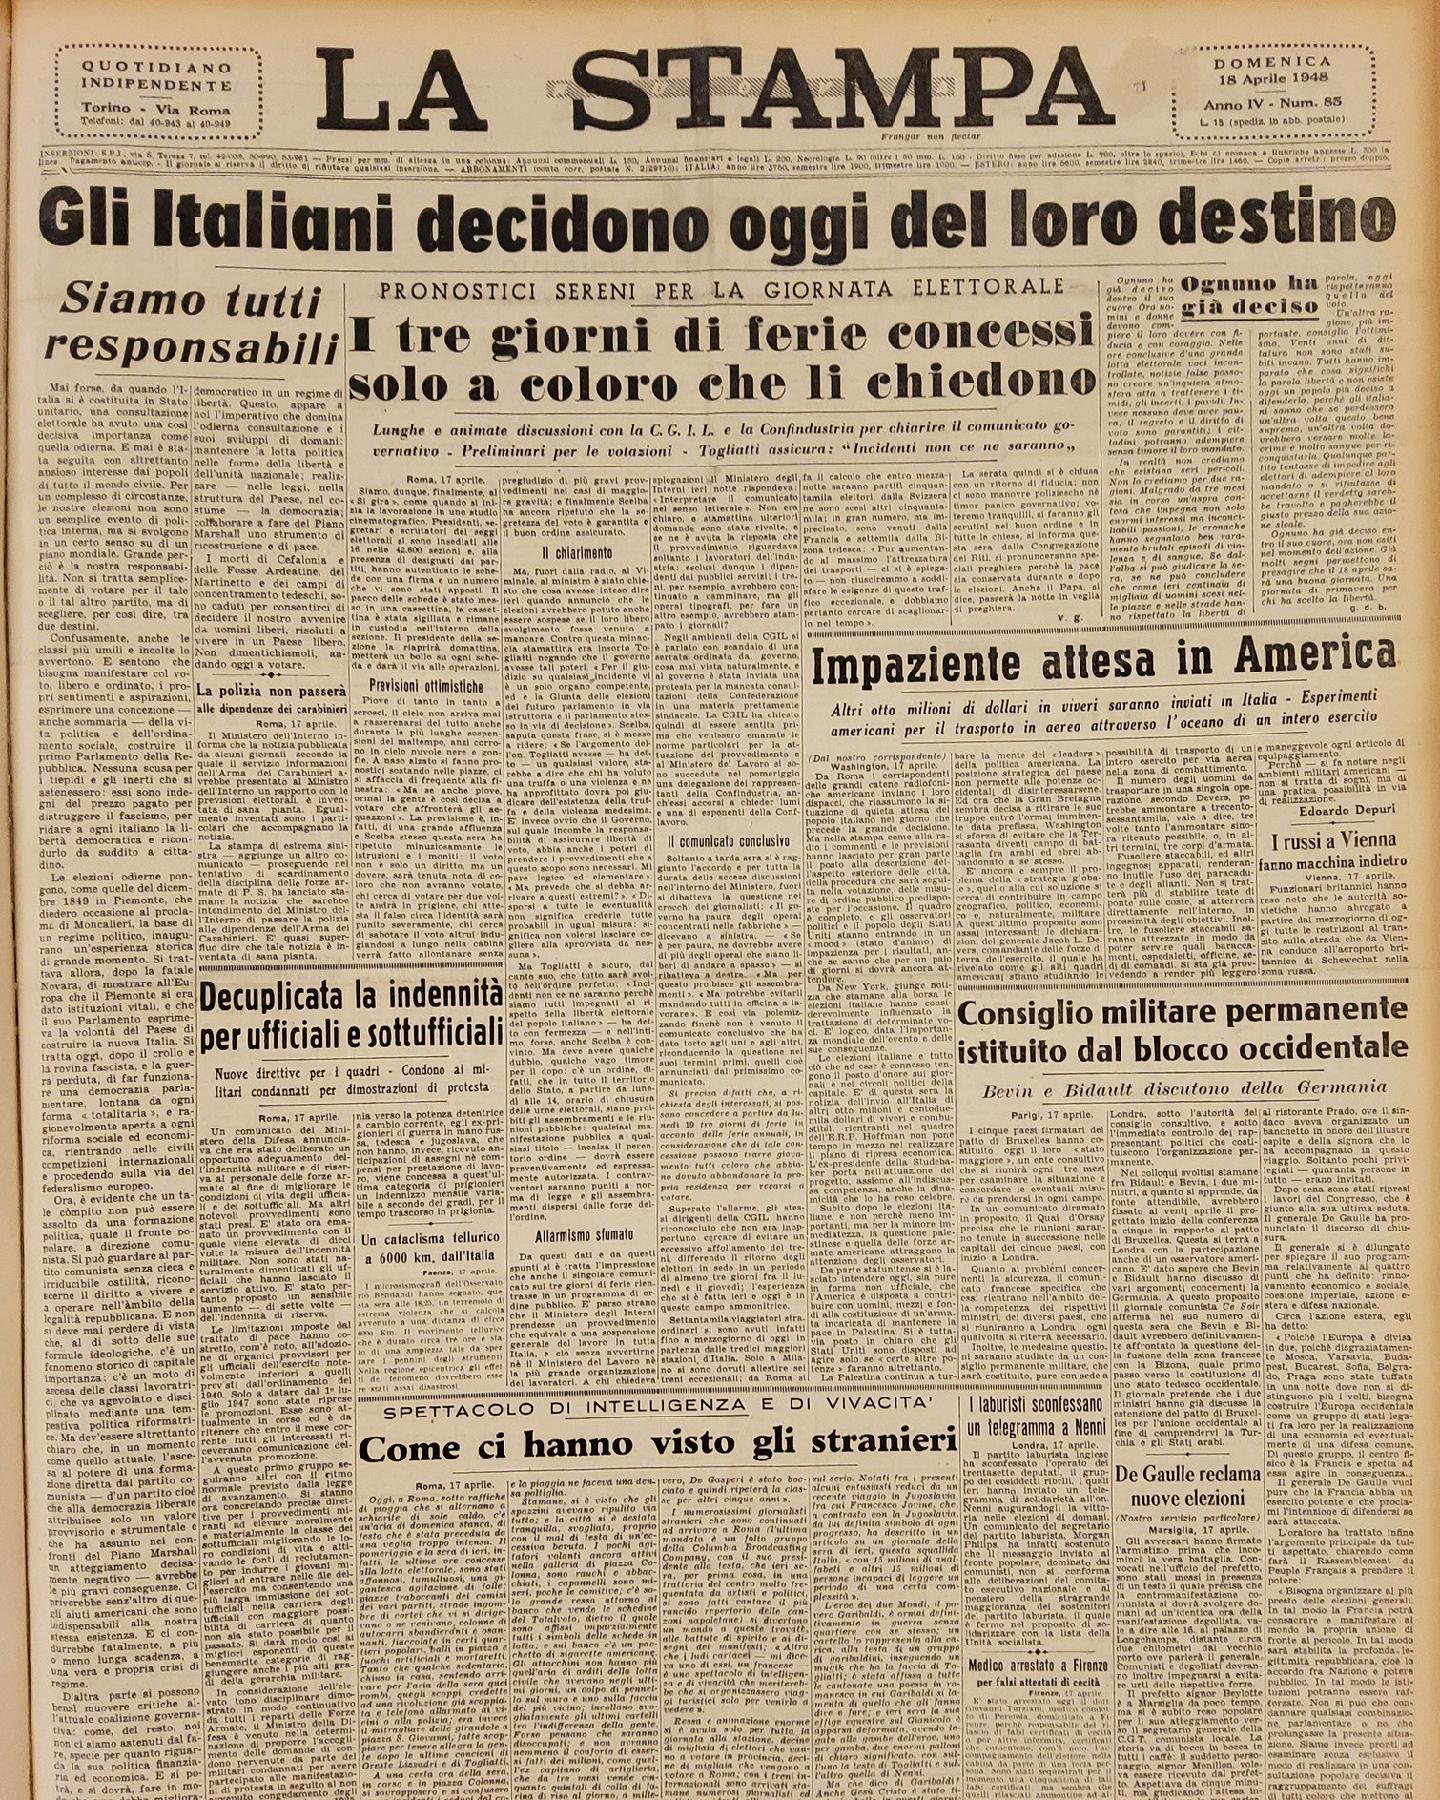 18 aprile 1948 - Prima pagina del quotidiano "La Stampa".